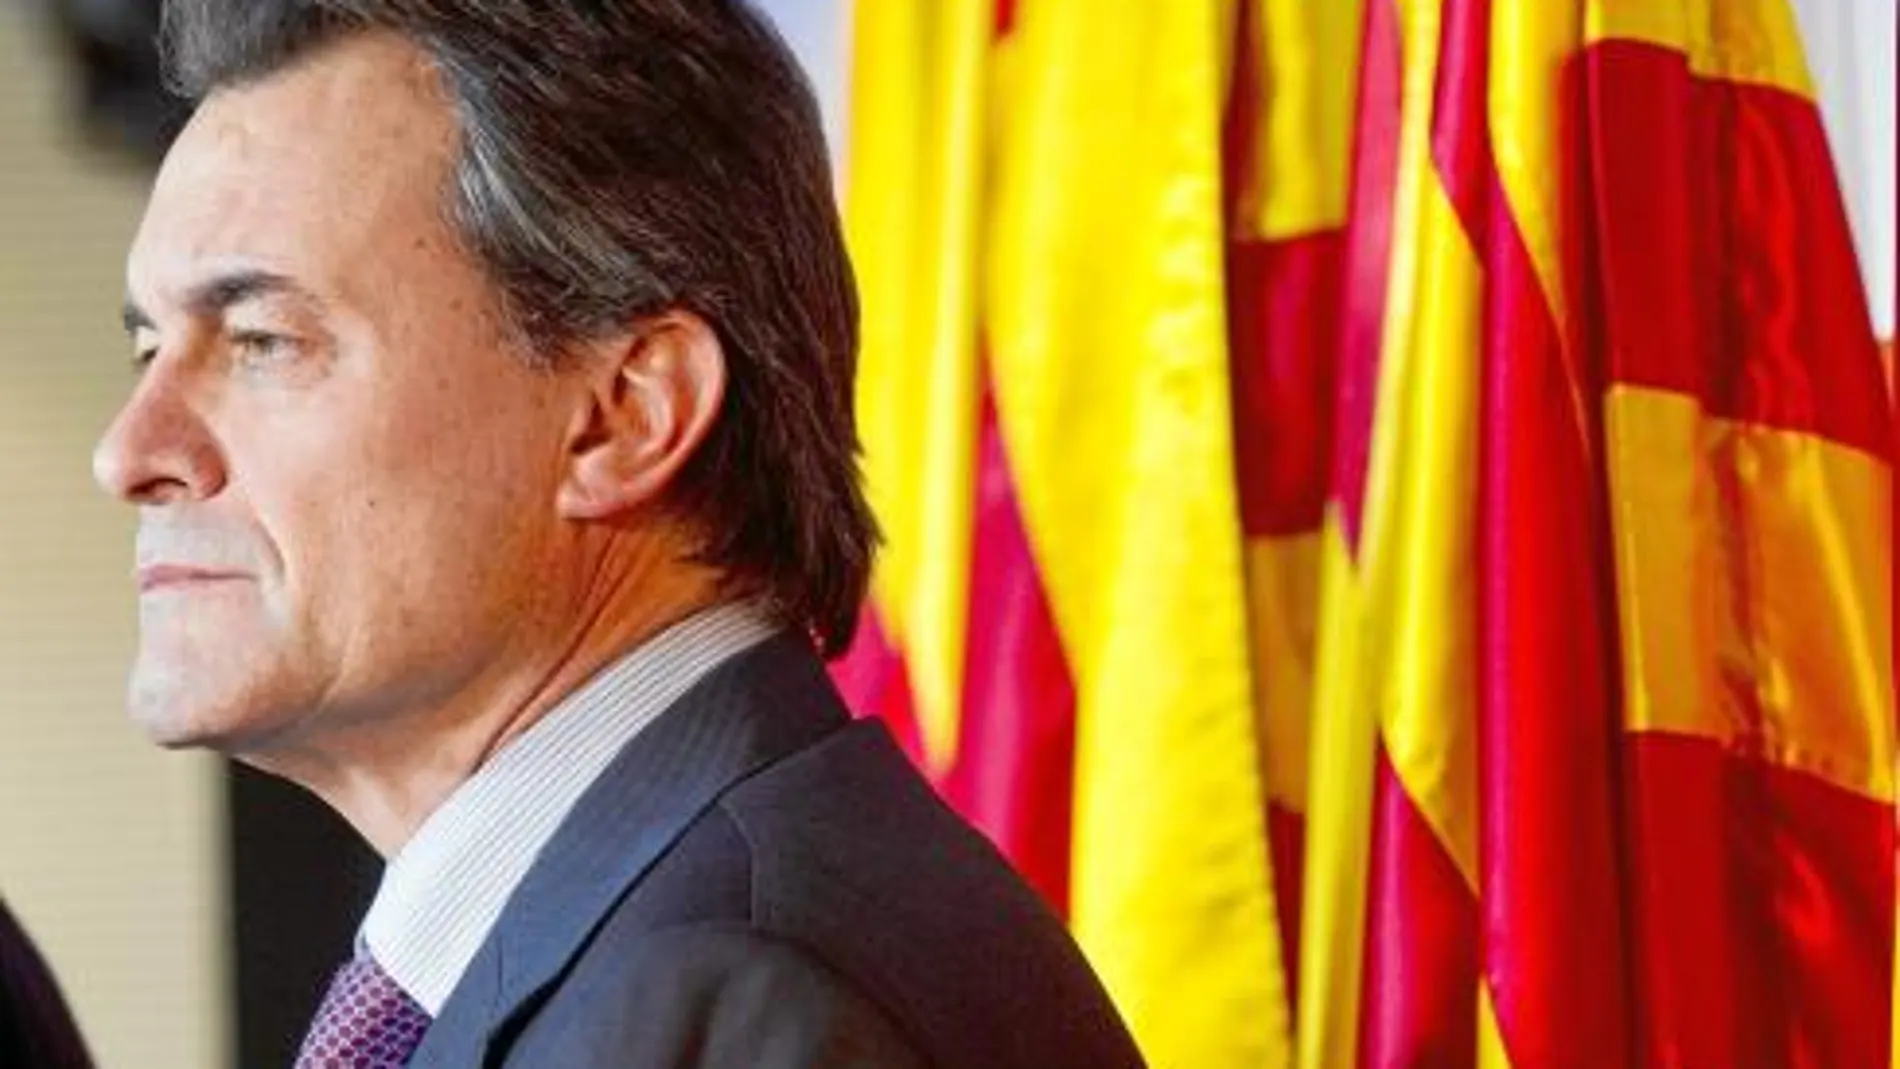 El presidente de CiU, Artur Mas, deberá hacer de equilibrista en el próximo Govern